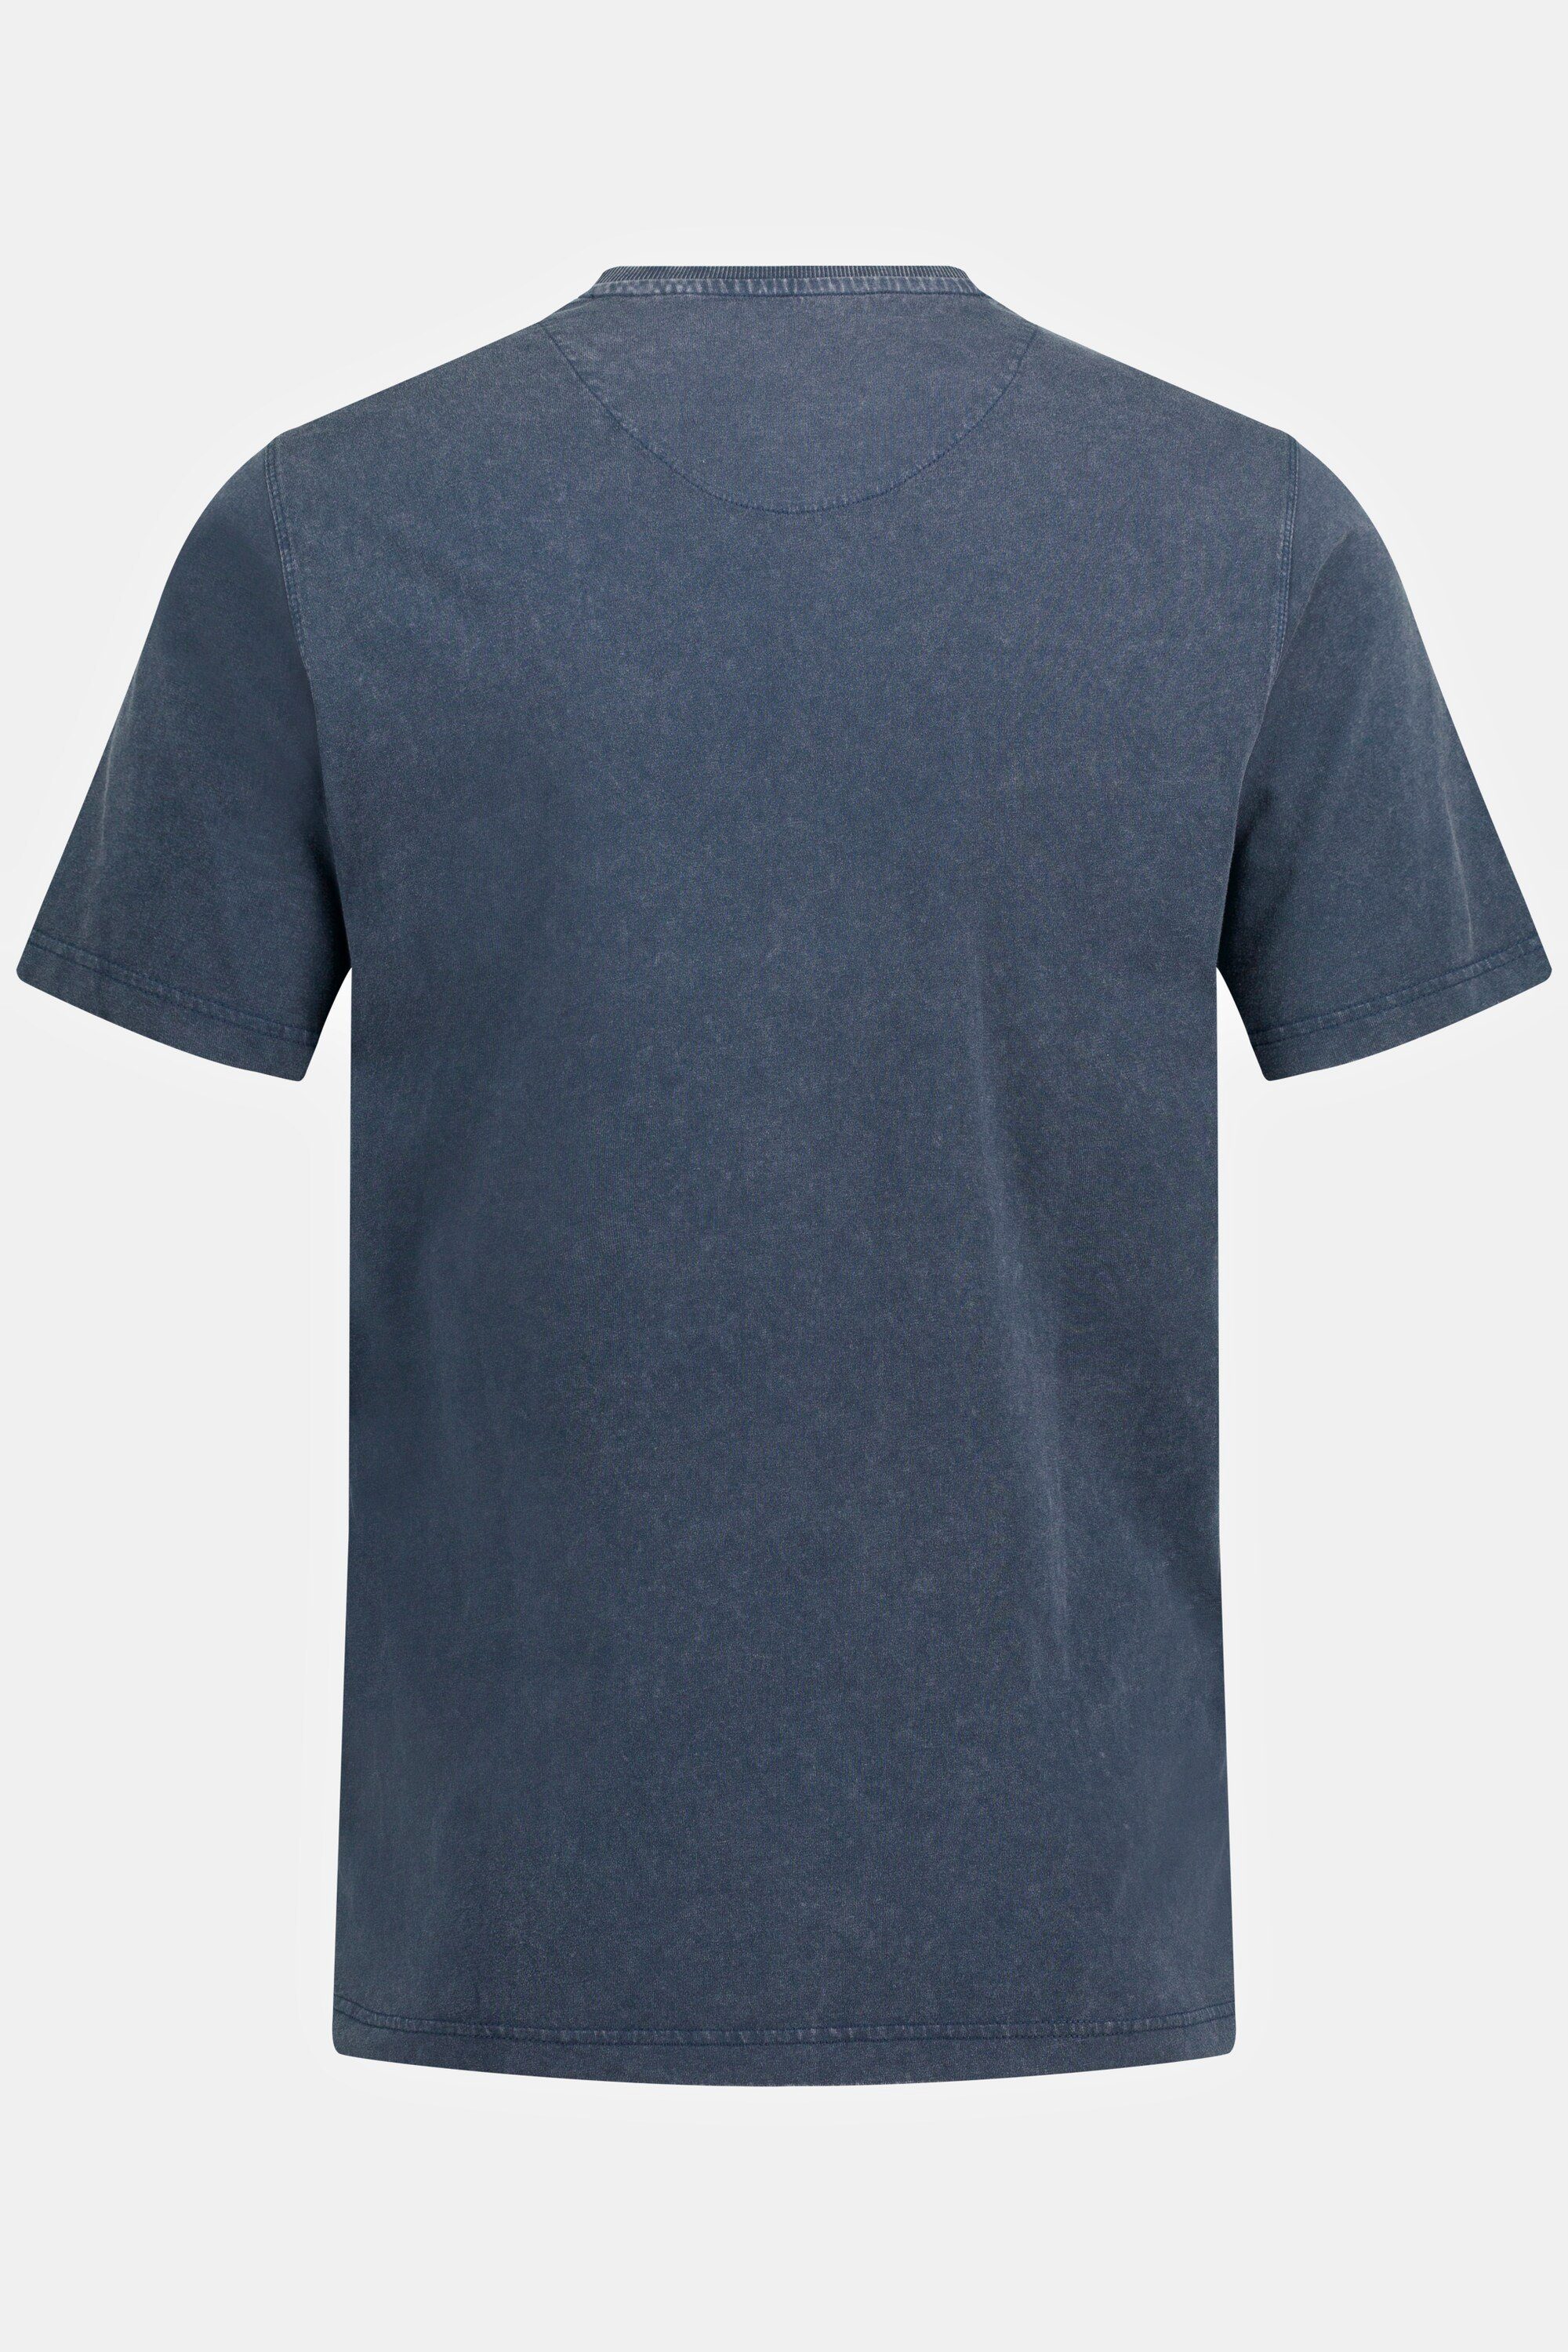 JP1880 T-Shirt T-Shirt nachtblau Brusttasche Rundhals mattes Halbarm